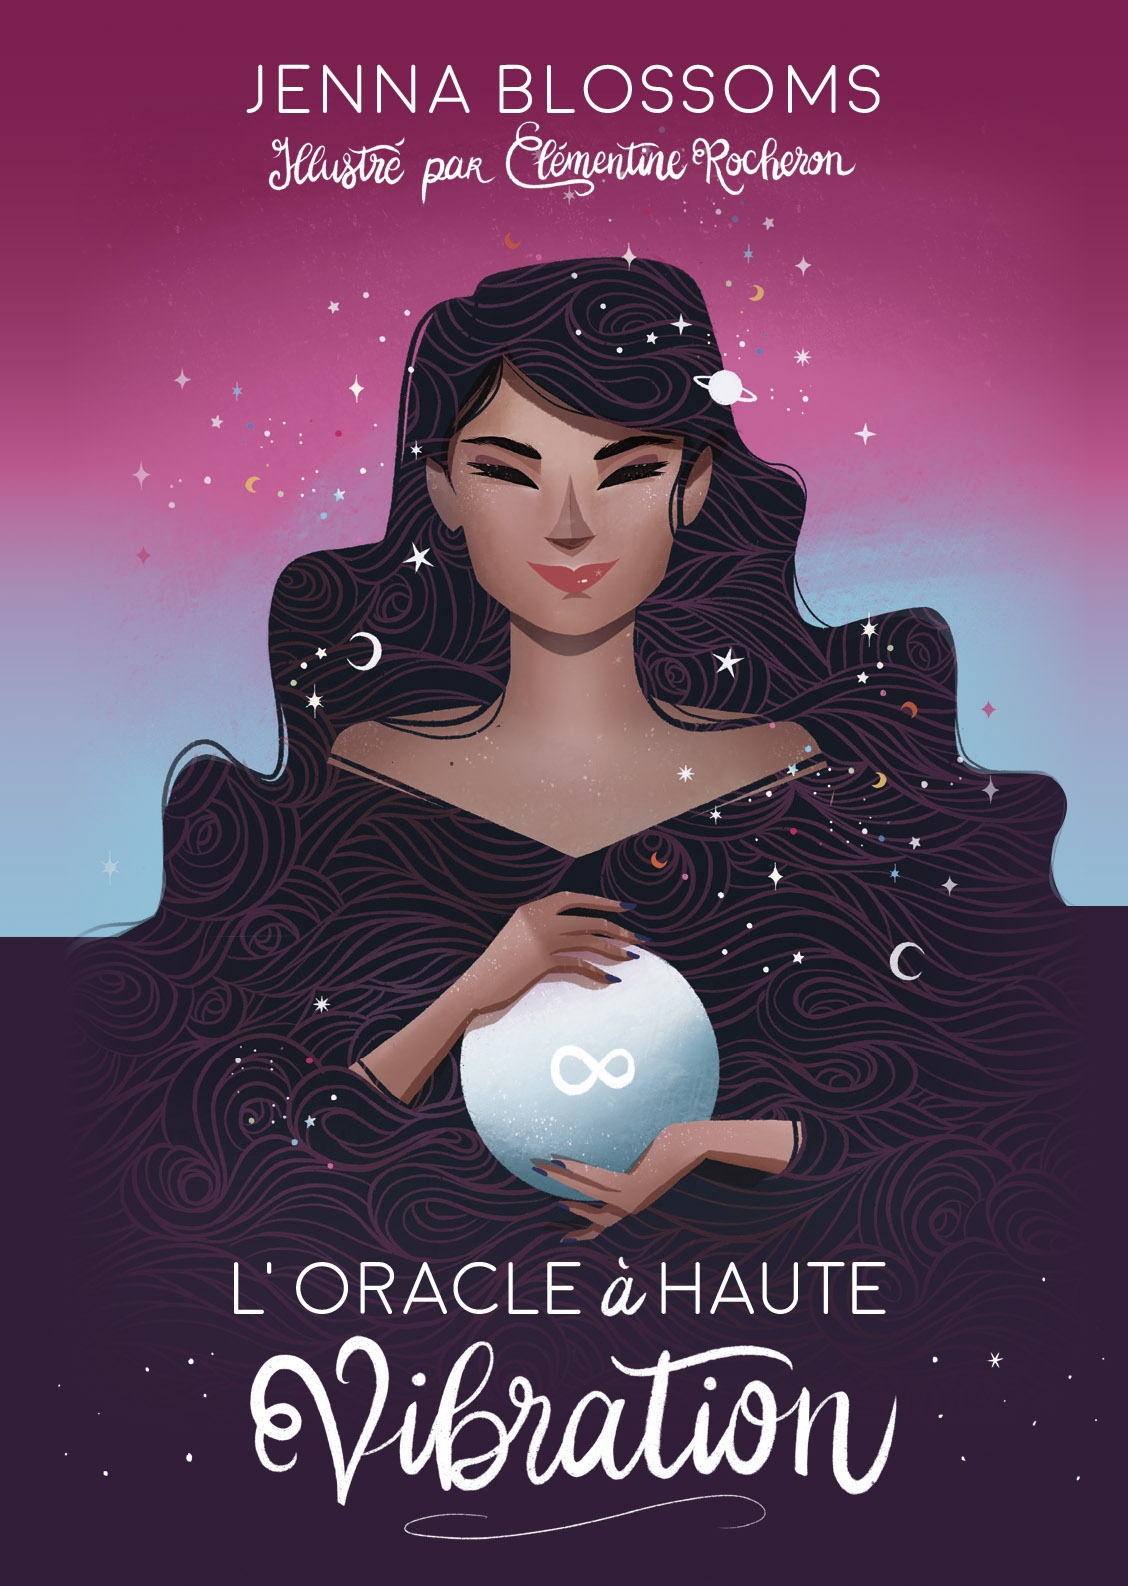 Le petit oracle contes merveilleux - Sylvie LAVOIE, (illustrateur) Gabriel  SANCHEZ